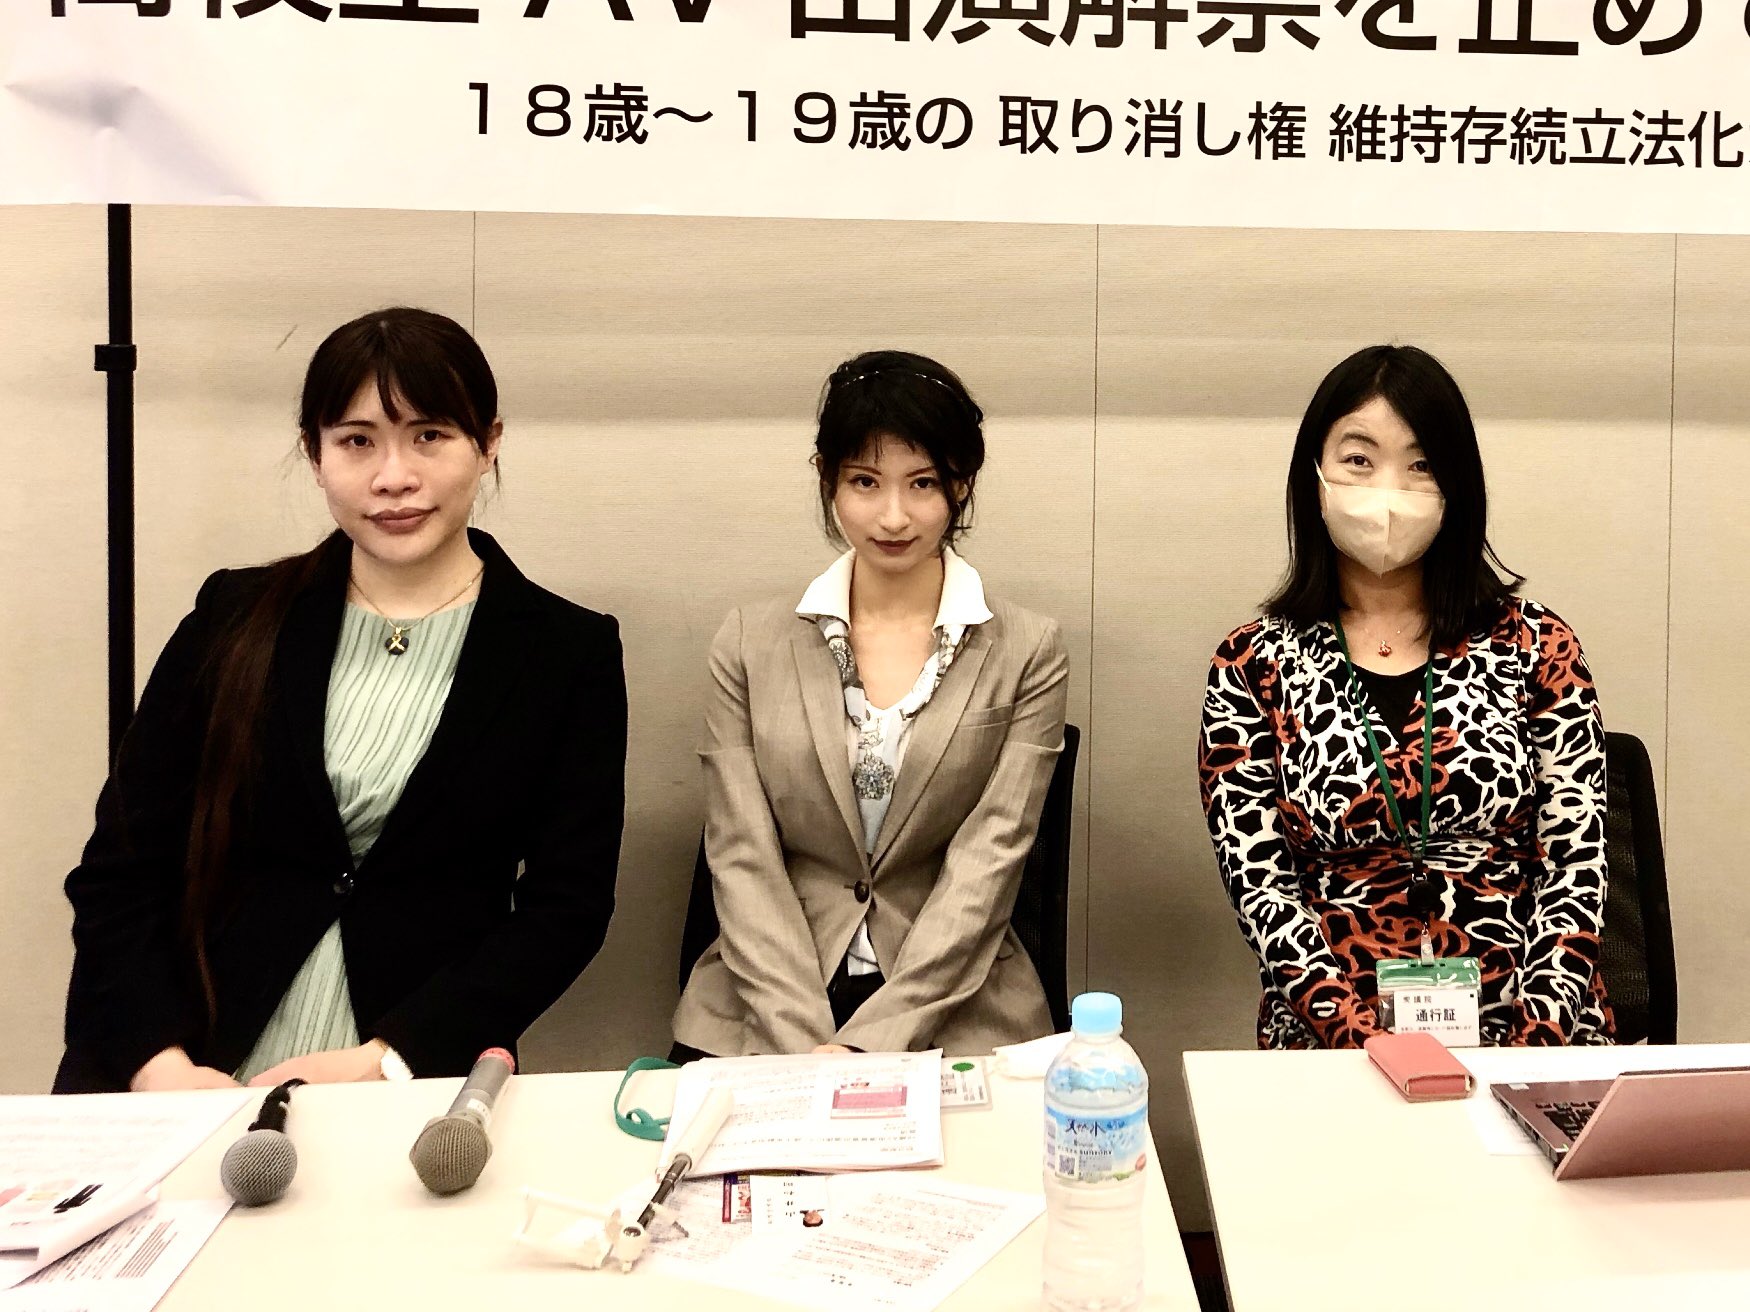 胡桃香氣召開記者會抗議日本成年年齡下修